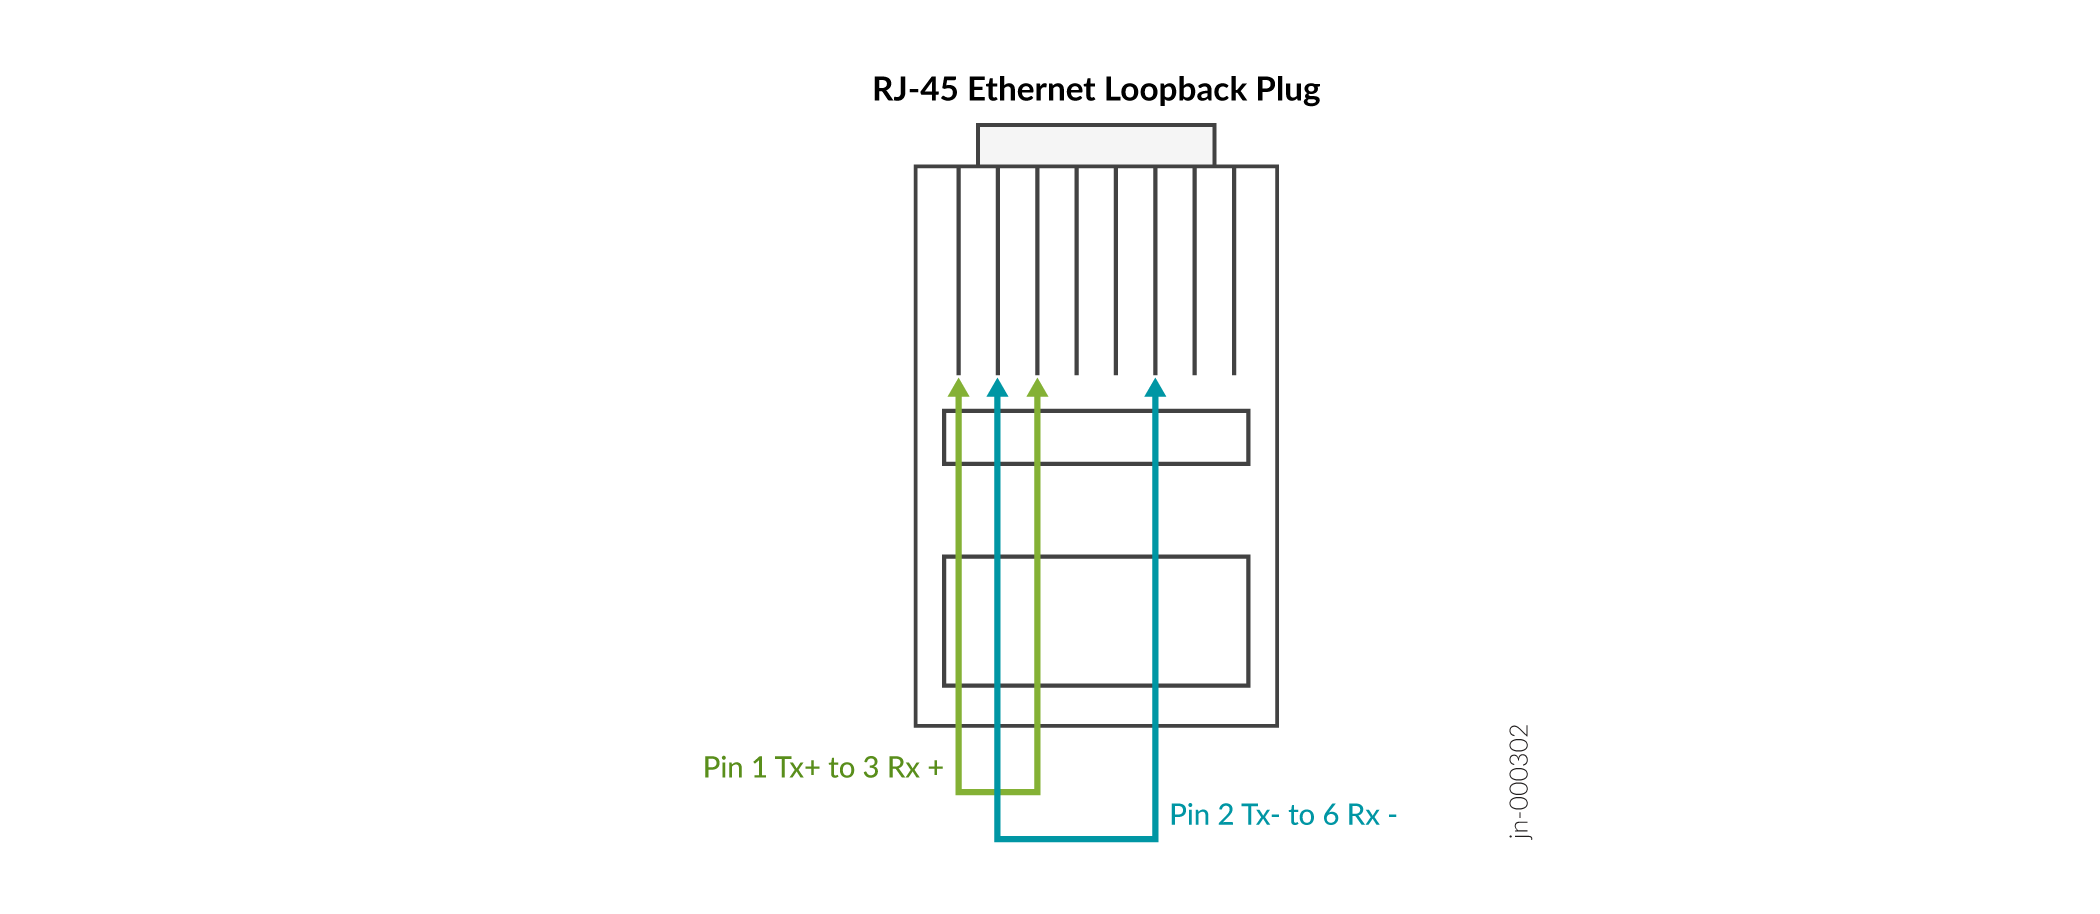 RJ-45 Ethernet Loopback Plug